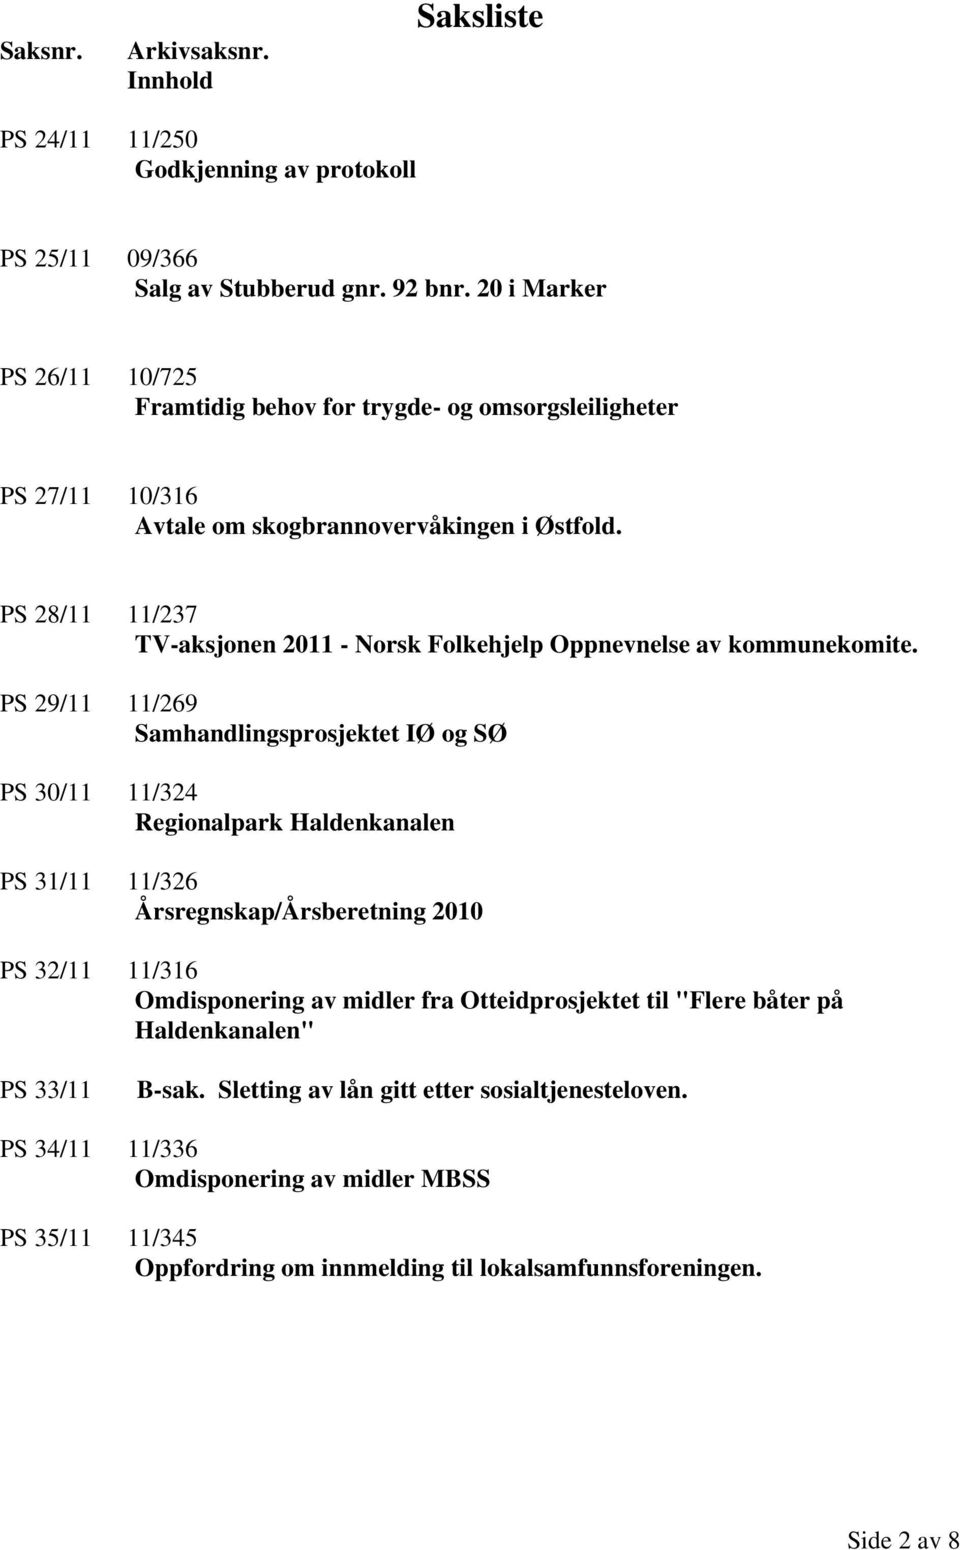 PS 28/11 11/237 TV-aksjonen 2011 - Norsk Folkehjelp Oppnevnelse av kommunekomite.